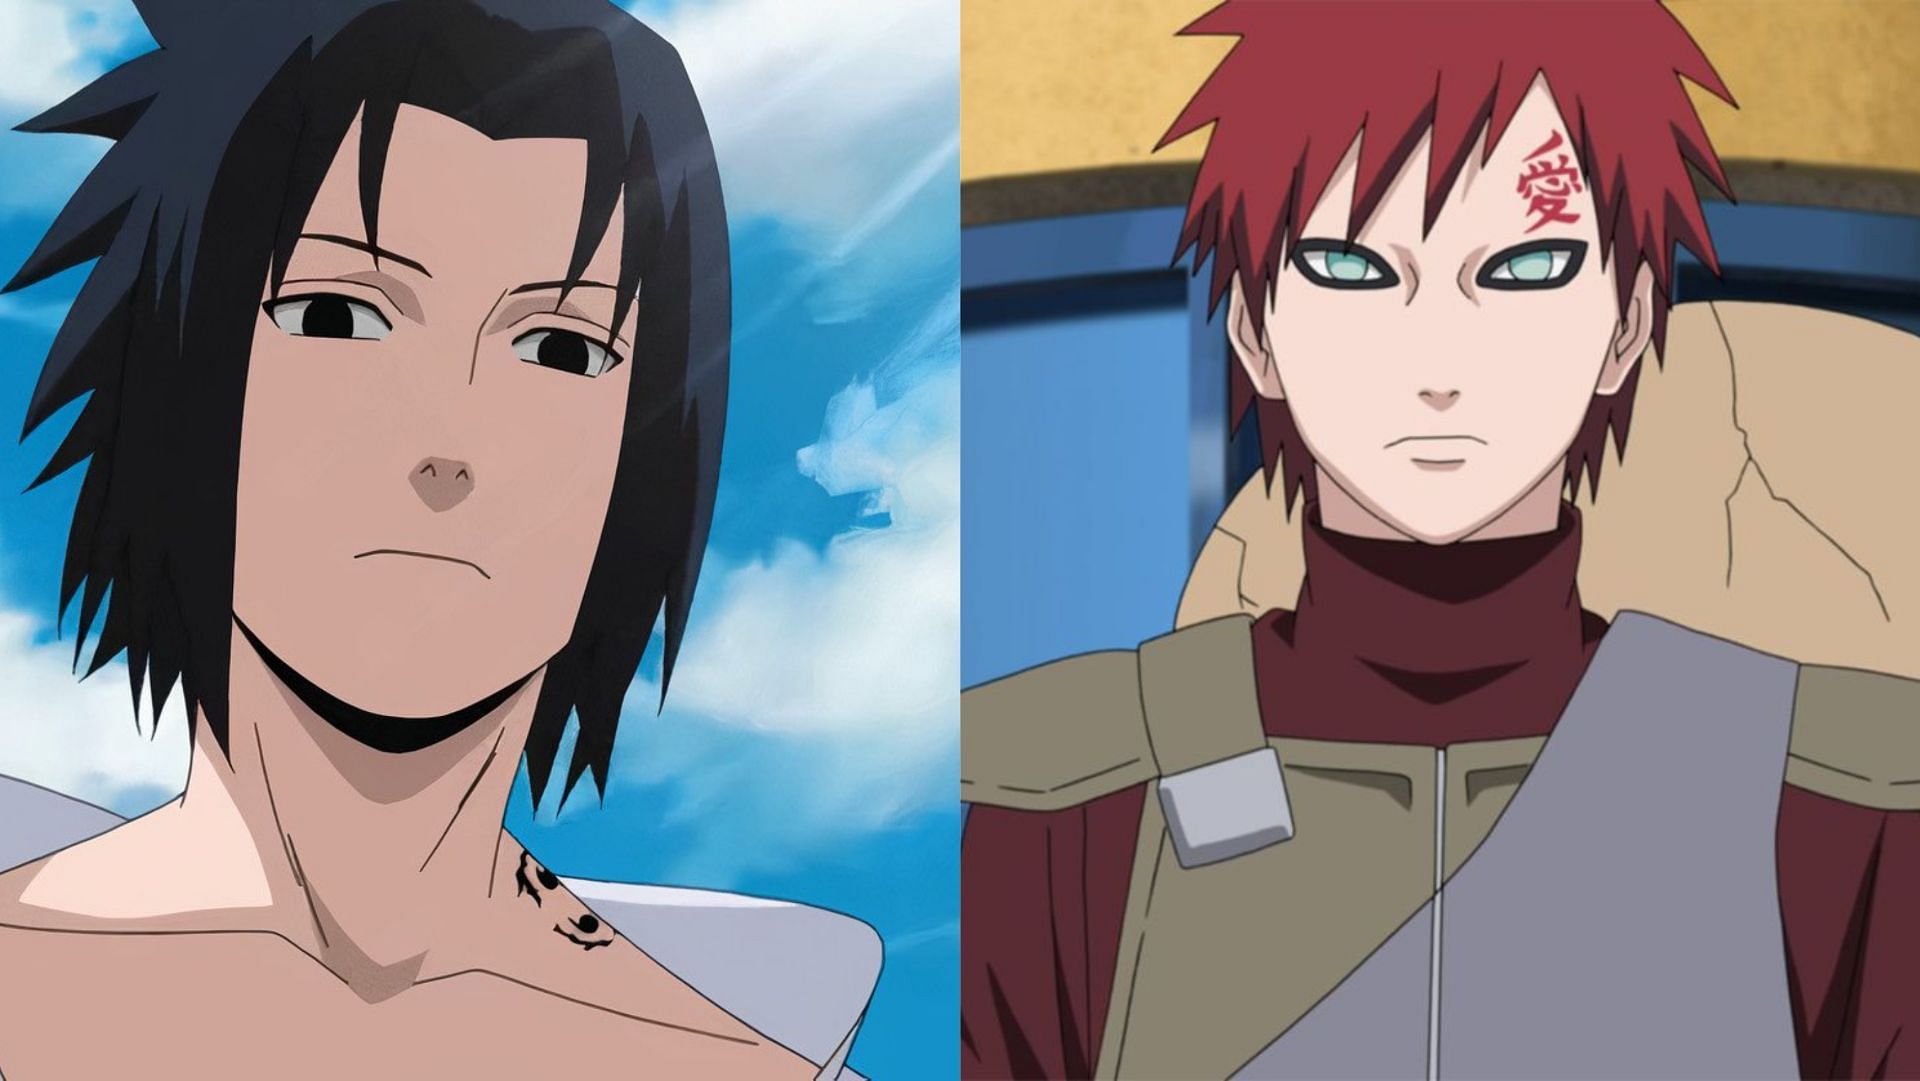 Sasuke and Gaara as seen in Naruto (Image credits: Masashi Kishimoto/ Studio Pierrot/ Viz Media)